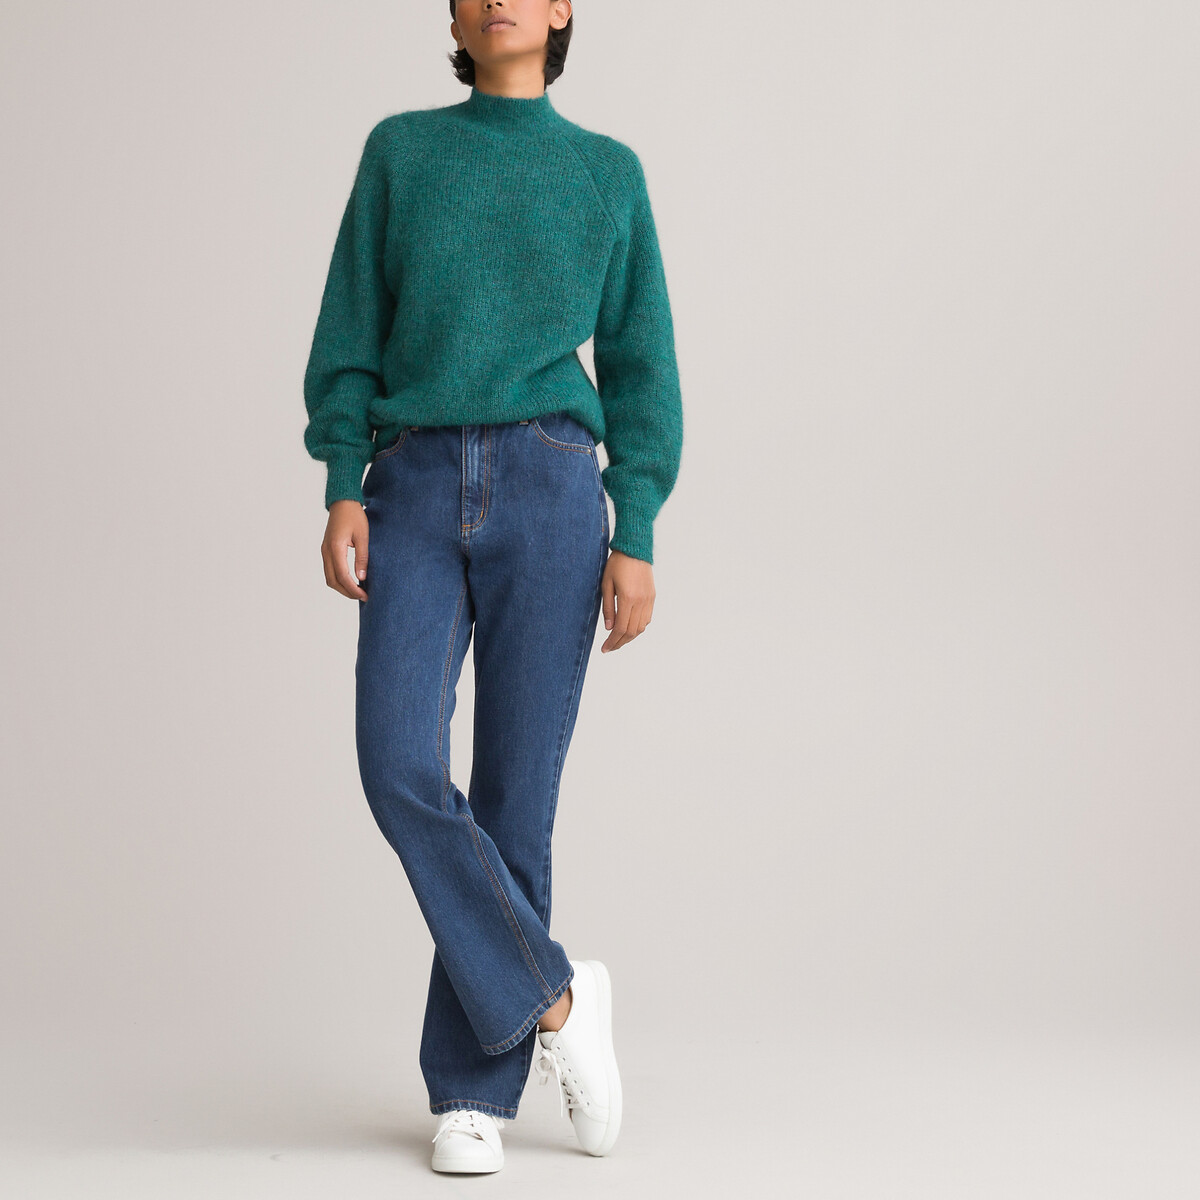 Пуловер LaRedoute С воротником-стойкой XXL зеленый, размер XXL - фото 2